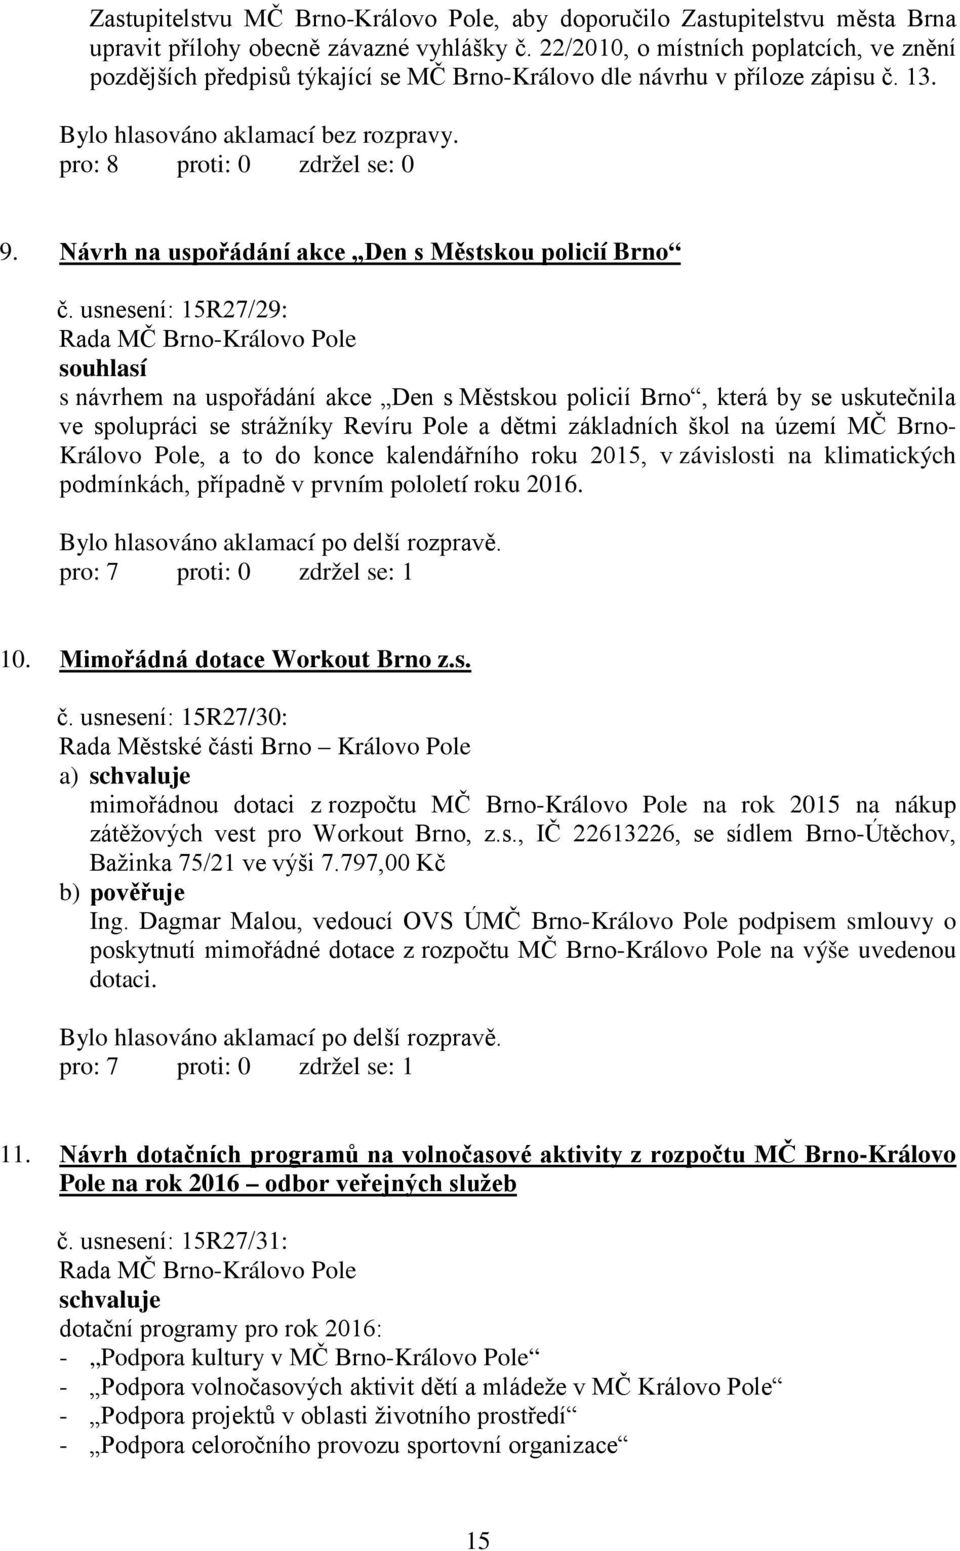 usnesení: 15R27/29: souhlasí s návrhem na uspořádání akce Den s Městskou policií Brno, která by se uskutečnila ve spolupráci se strážníky Revíru Pole a dětmi základních škol na území MČ Brno- Královo